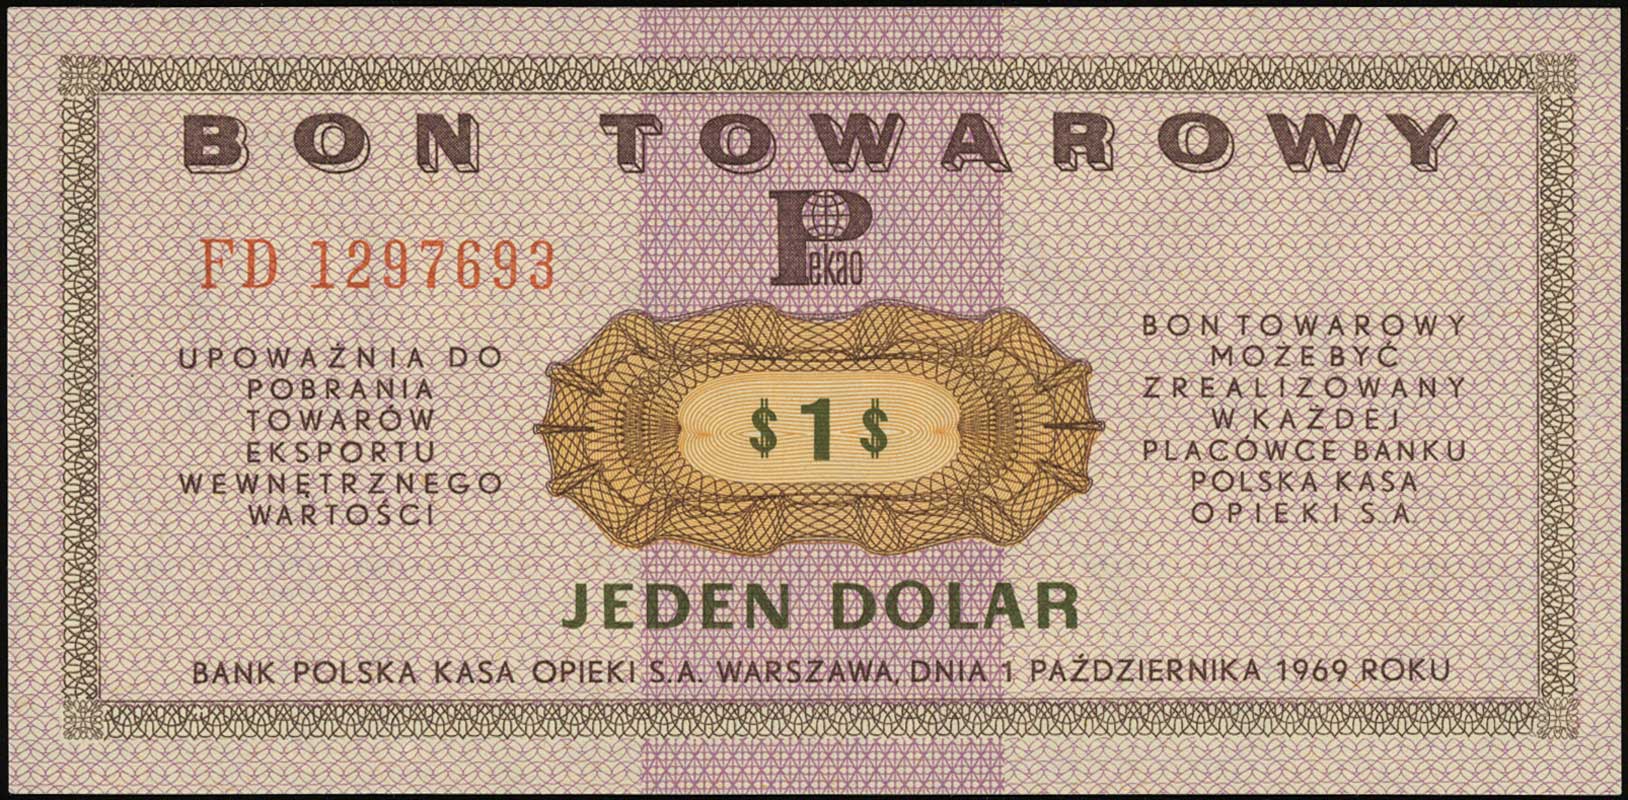 zestaw bonów: 50 centów 1.07.1969 (GC 0024049) i 1 dolar 1.10.1969 (FD 1297693), Miłczak B16c i B17b, wyśmienicie zachowane, razem 2 sztuki